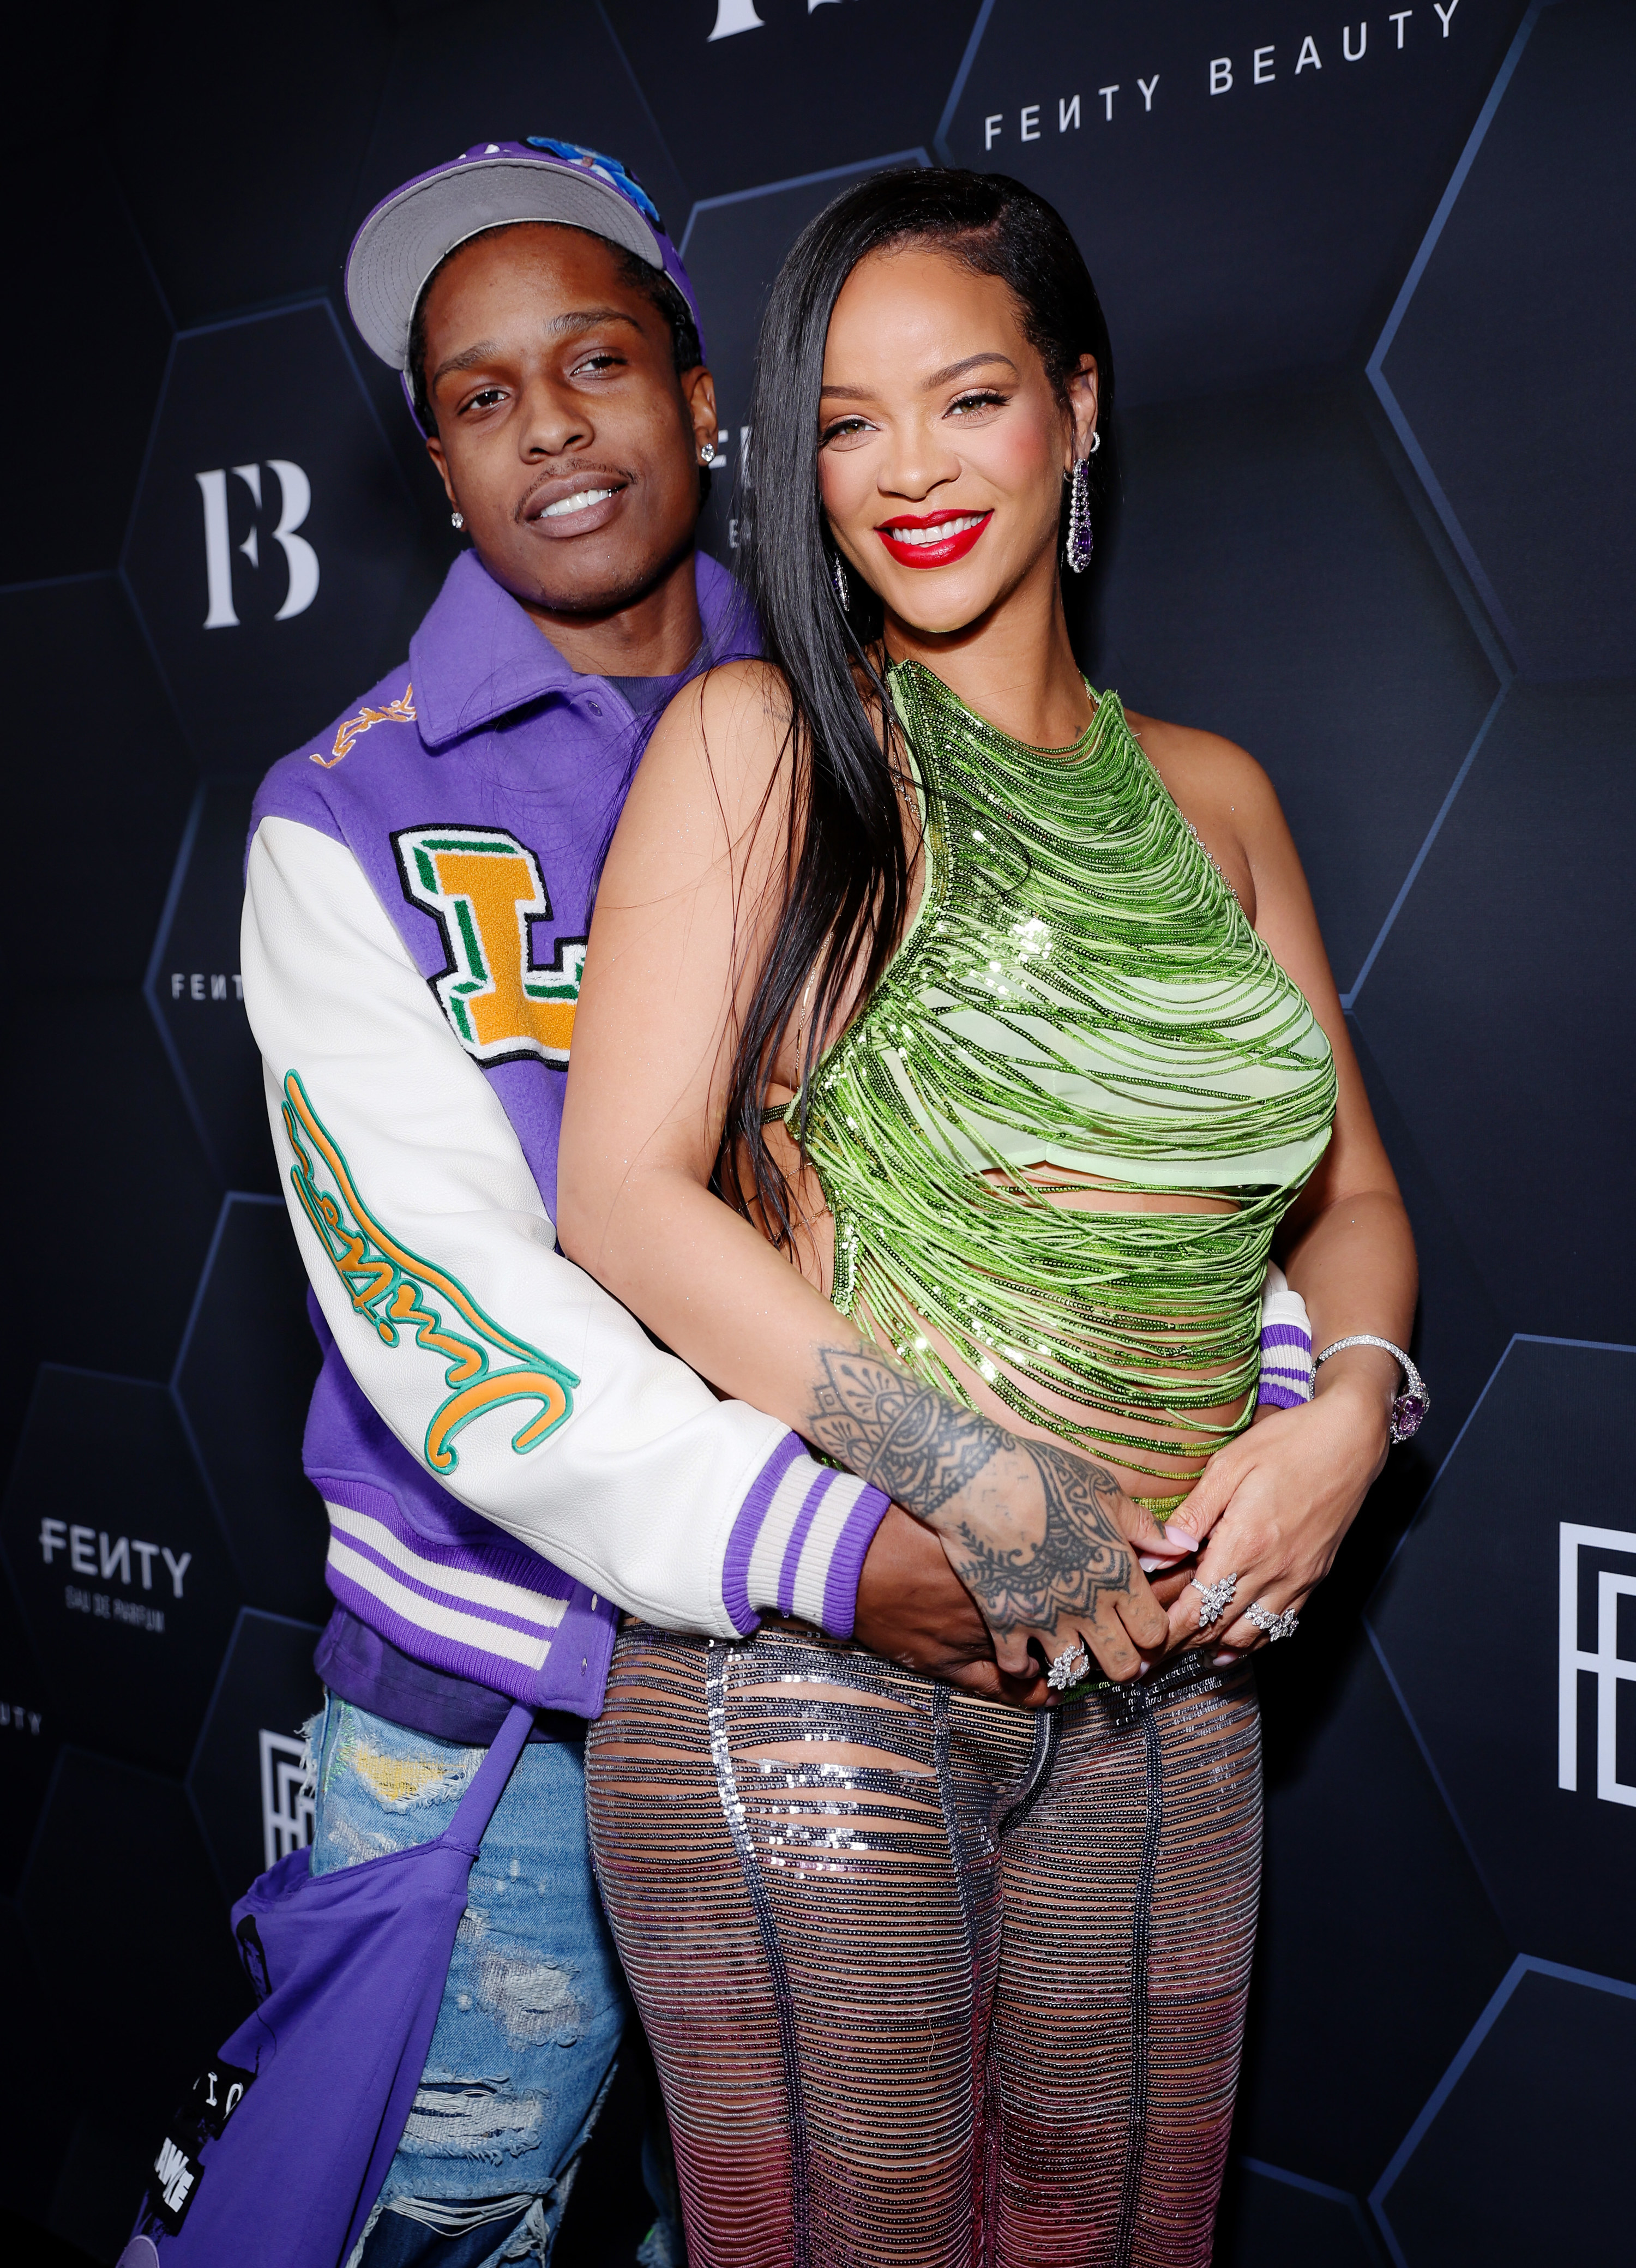 Rocky puts his arms around Rihanna